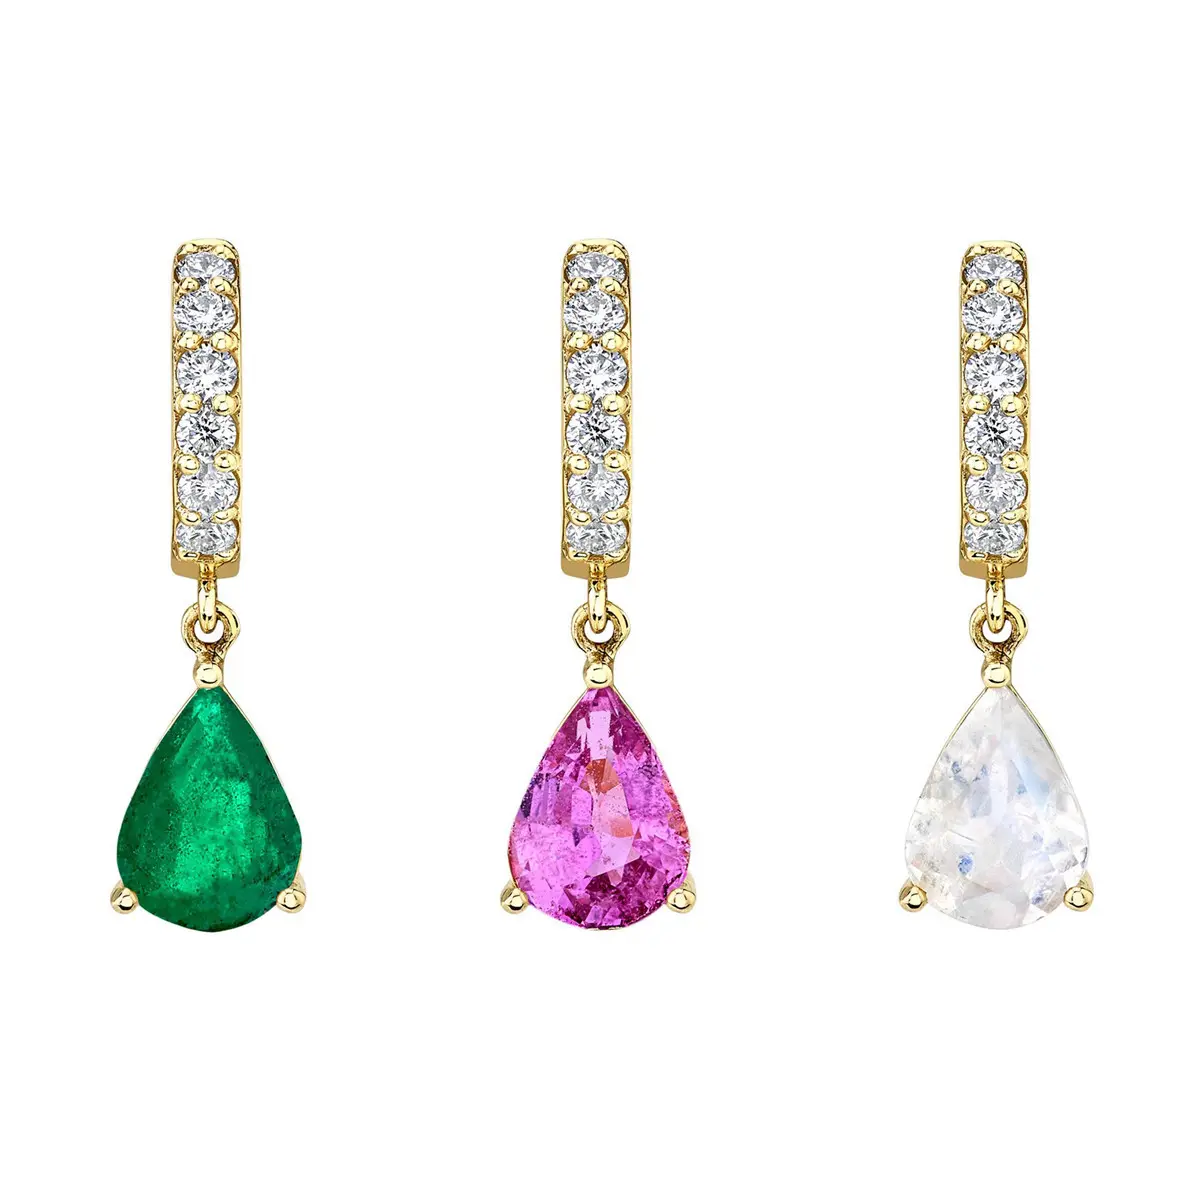 New Hot Selling Spot Jewelry Water Drop Pendant Earrings Zircon Brass Plated 18K Gold Earrings